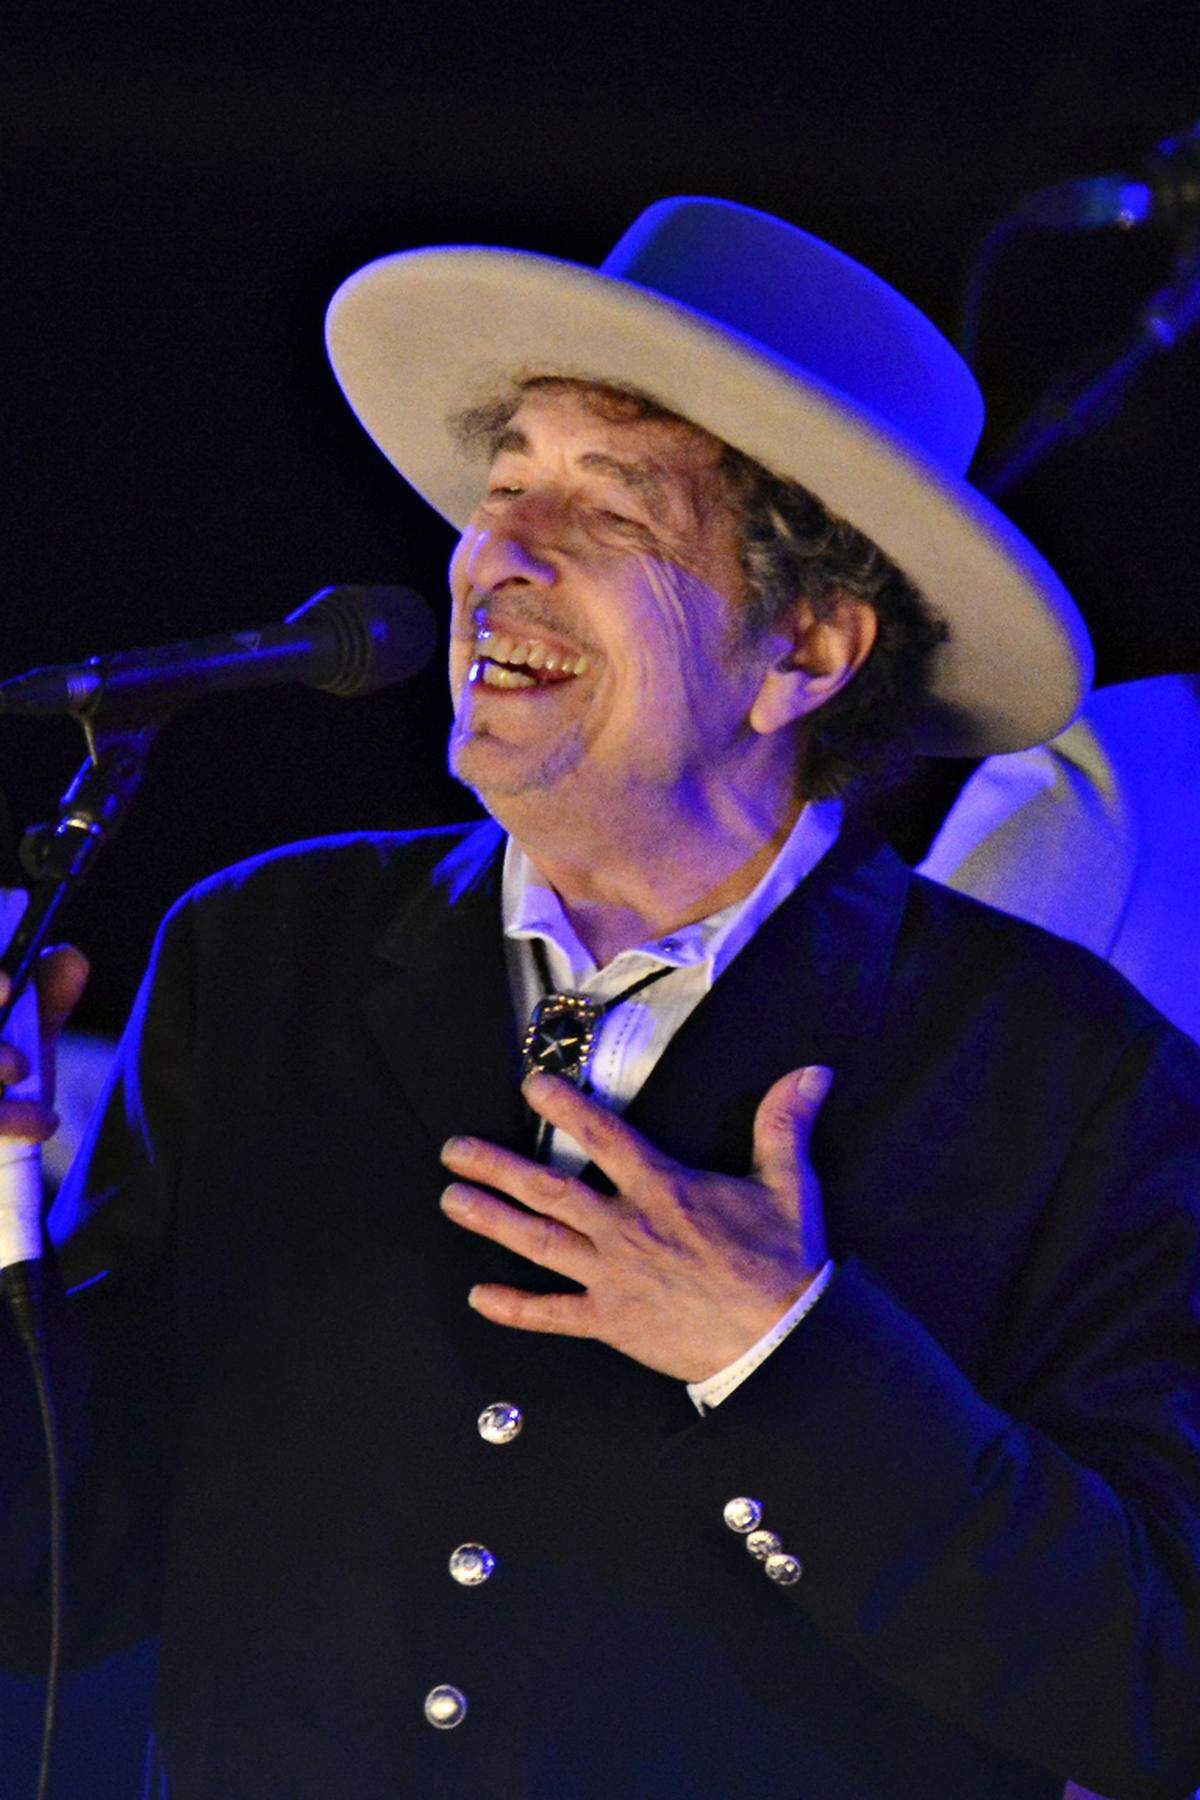 Es gibt nicht wenige, die den Songwriter Bob Dylan als Shakespeare des 20. Jahrhunderts verehren, er war sogar schon für den Literaturnobelpreis im Gespräch. Den braucht er nicht zu seinem 75. Geburtstag (25.5.), sein Kultstatus ist unbestritten. Apropos Markenwert: Vor 125 Jahren wurde die Firma Philips gegründet (15.5.), vor 75 Jahren Sony (7.5.), der Zufall will es, dass in derselben Woche (12.5.1941) Konrad Zuse seinen Z3 vorstellte, den ersten funktionsfähigen Computer der Welt. Der Z3 ist eine bewundernswerte Leistung, aber natürlich heute veraltet, was man von der einen Tag danach (13.5.) auf die Welt gekommene Senta Berger nicht behaupten kann: Ein österreichischer Weltstar, den man bedingungslos verehren muss.